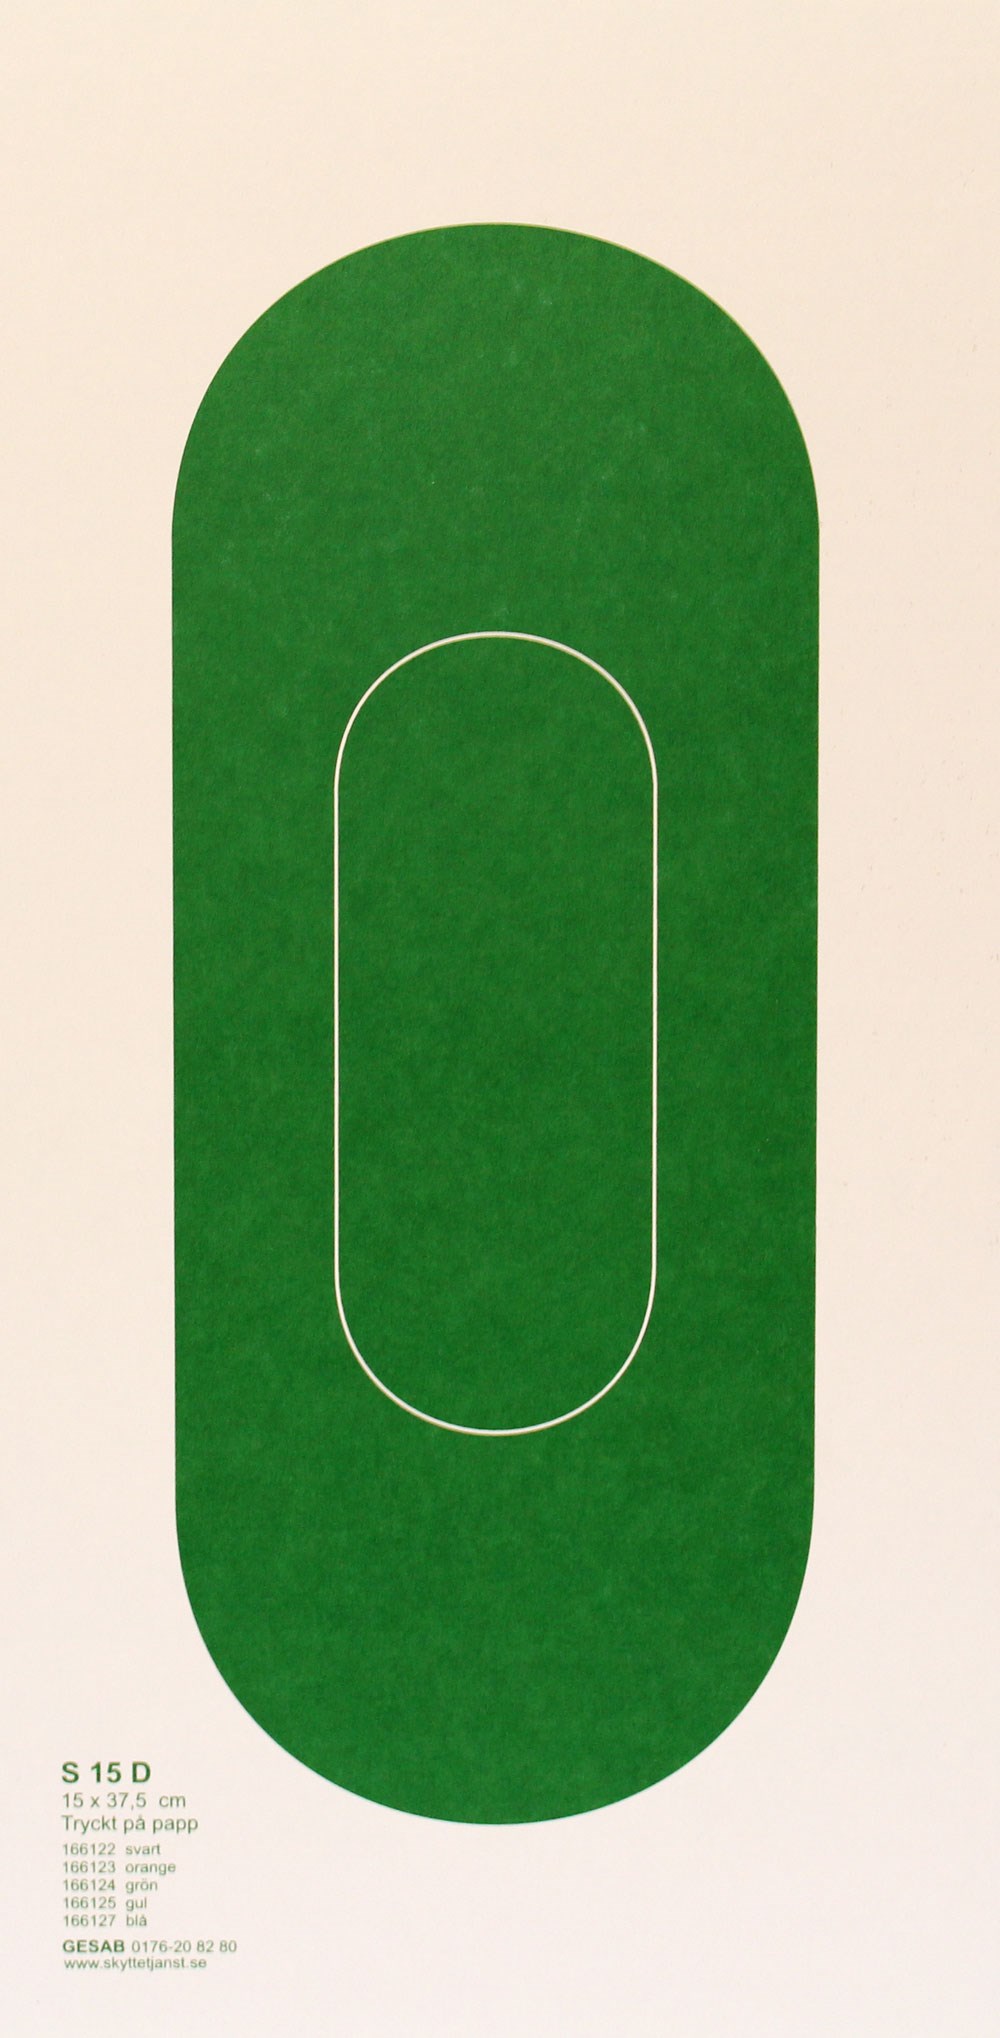 S15 D papp grön